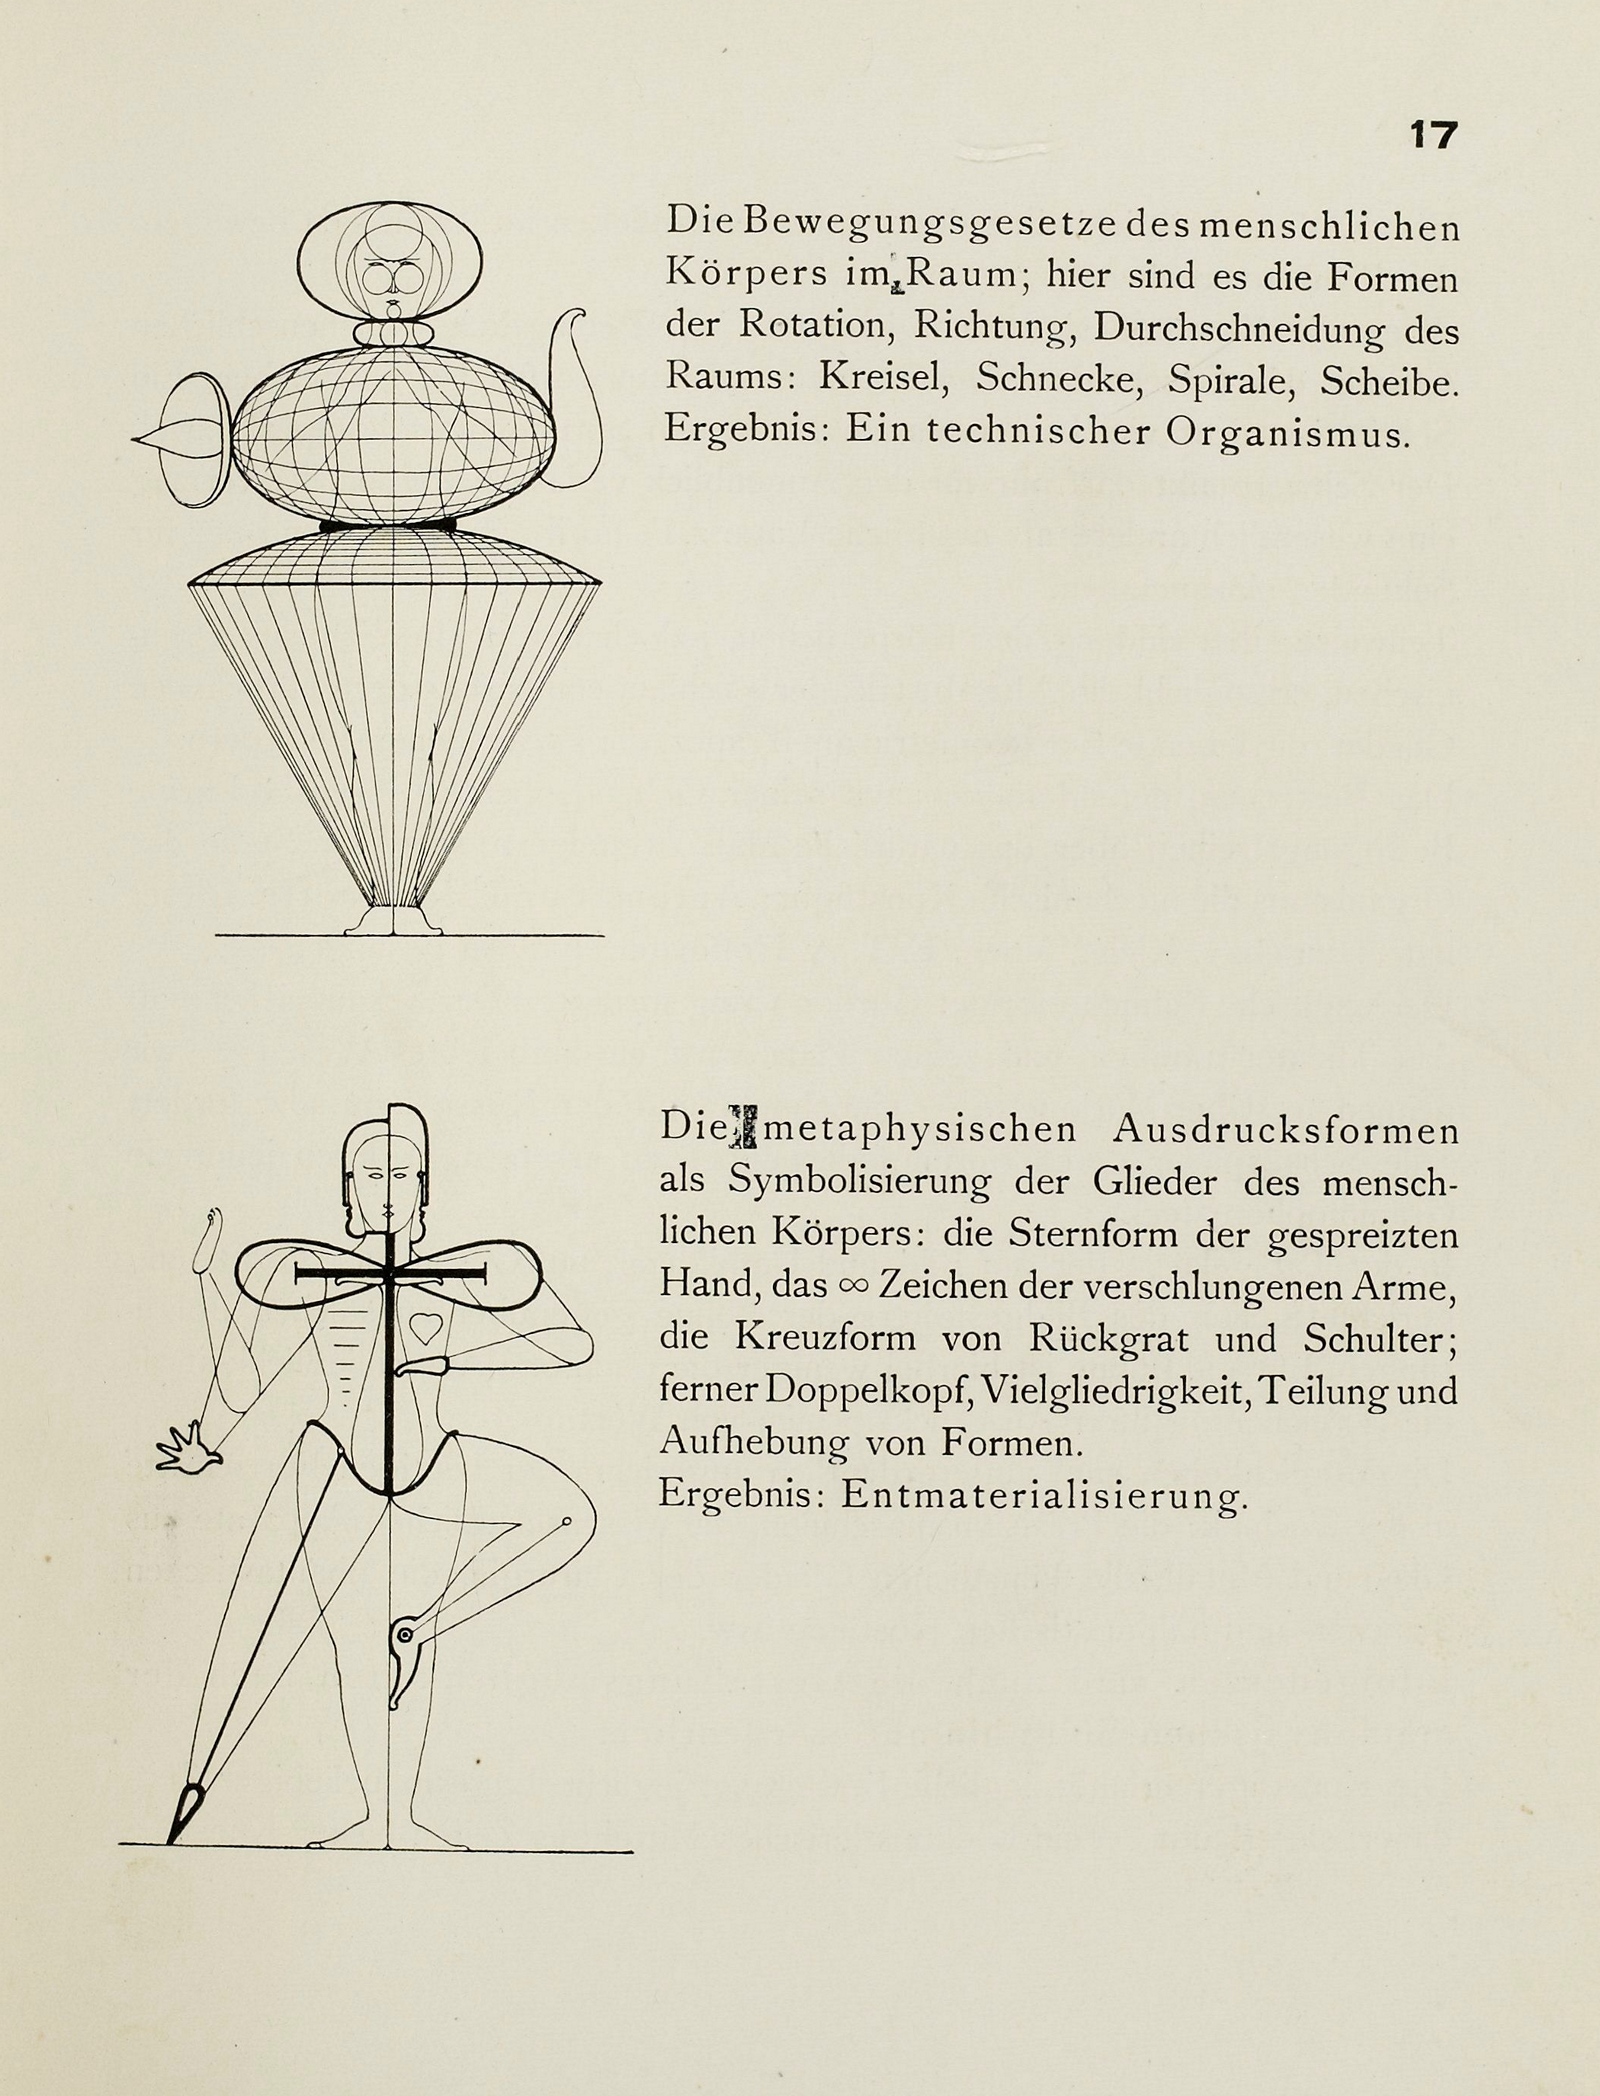 Die Bühne im Bauhaus. — München : Albert Langen Verlag, 1925. — 88 s., ill. — (Bauhausbücher 4)